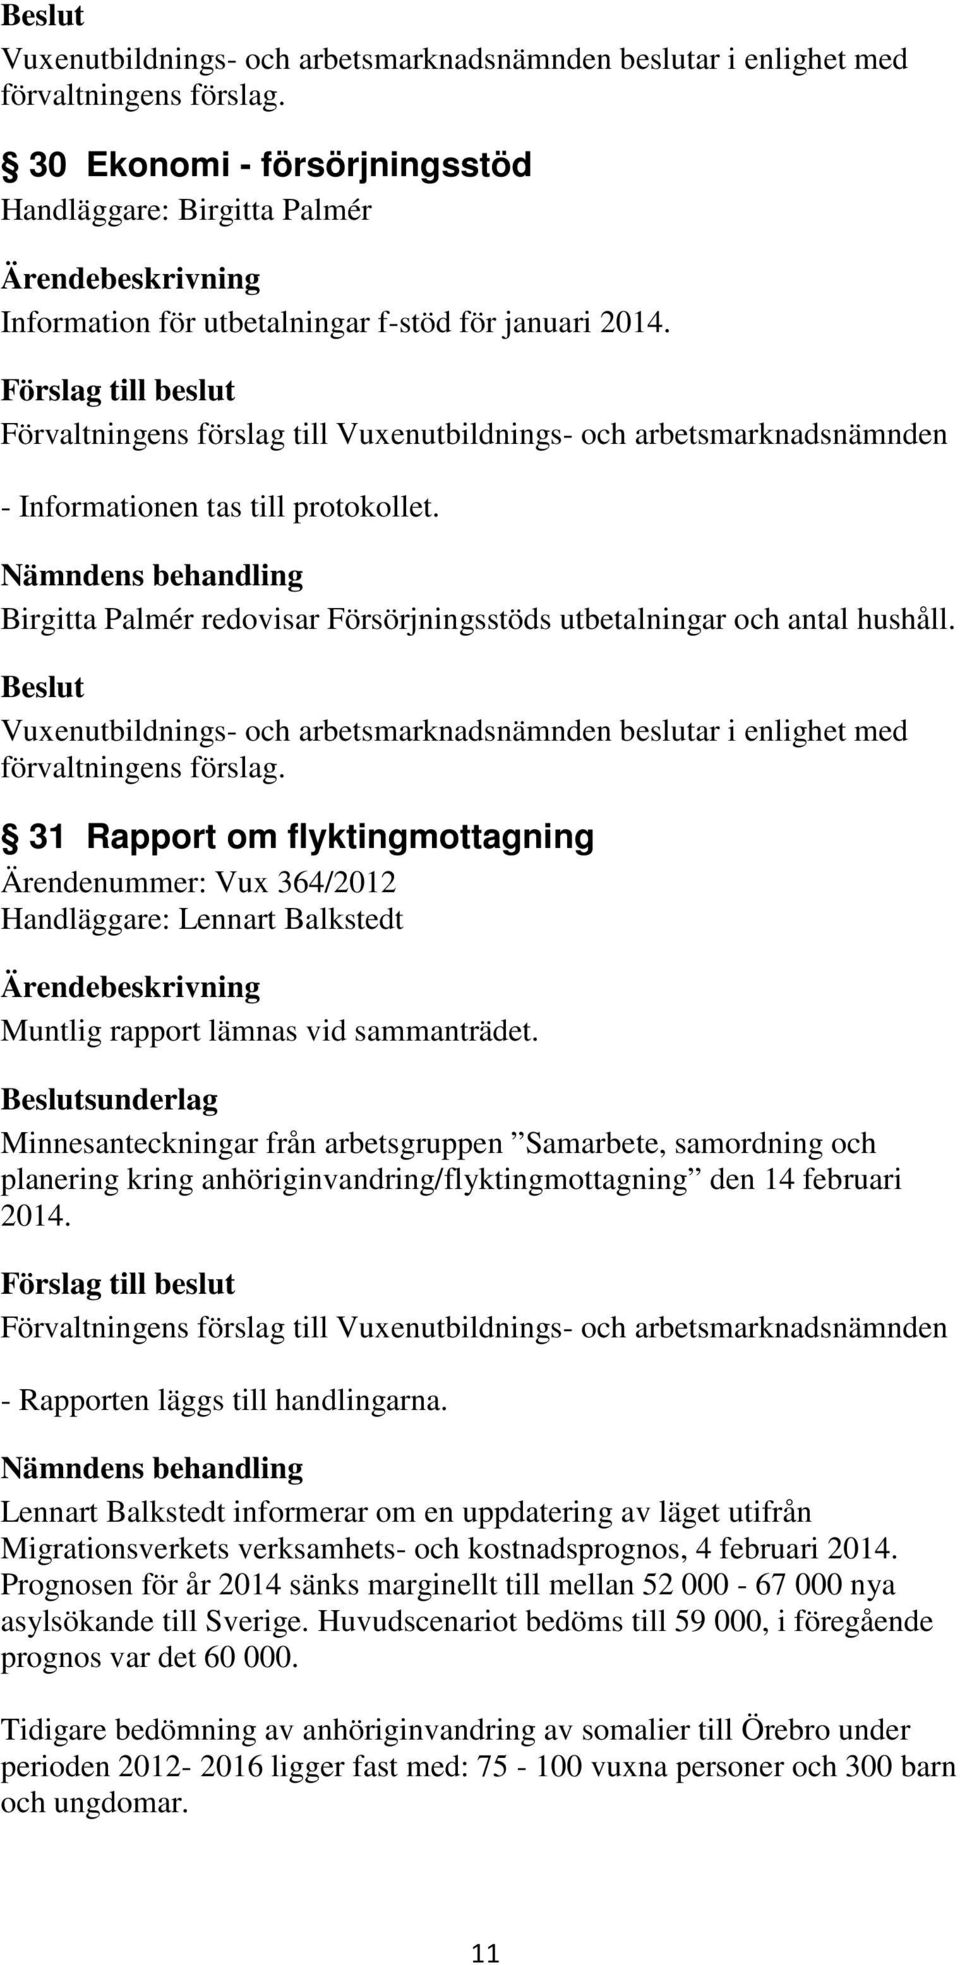 31 Rapport om flyktingmottagning Ärendenummer: Vux 364/2012 Handläggare: Lennart Balkstedt Muntlig rapport lämnas vid sammanträdet.